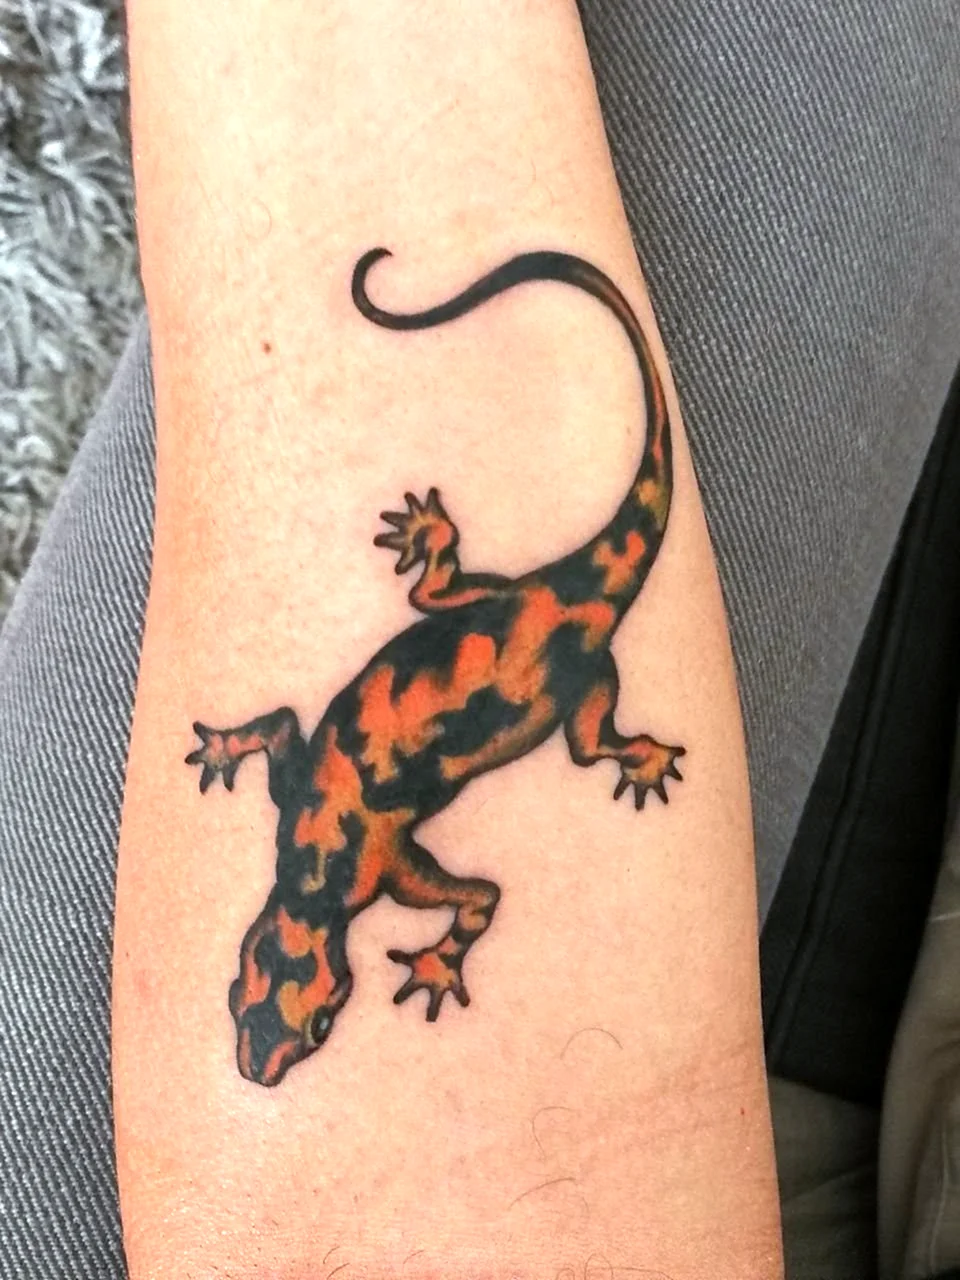 Lizard Tattoo ideas